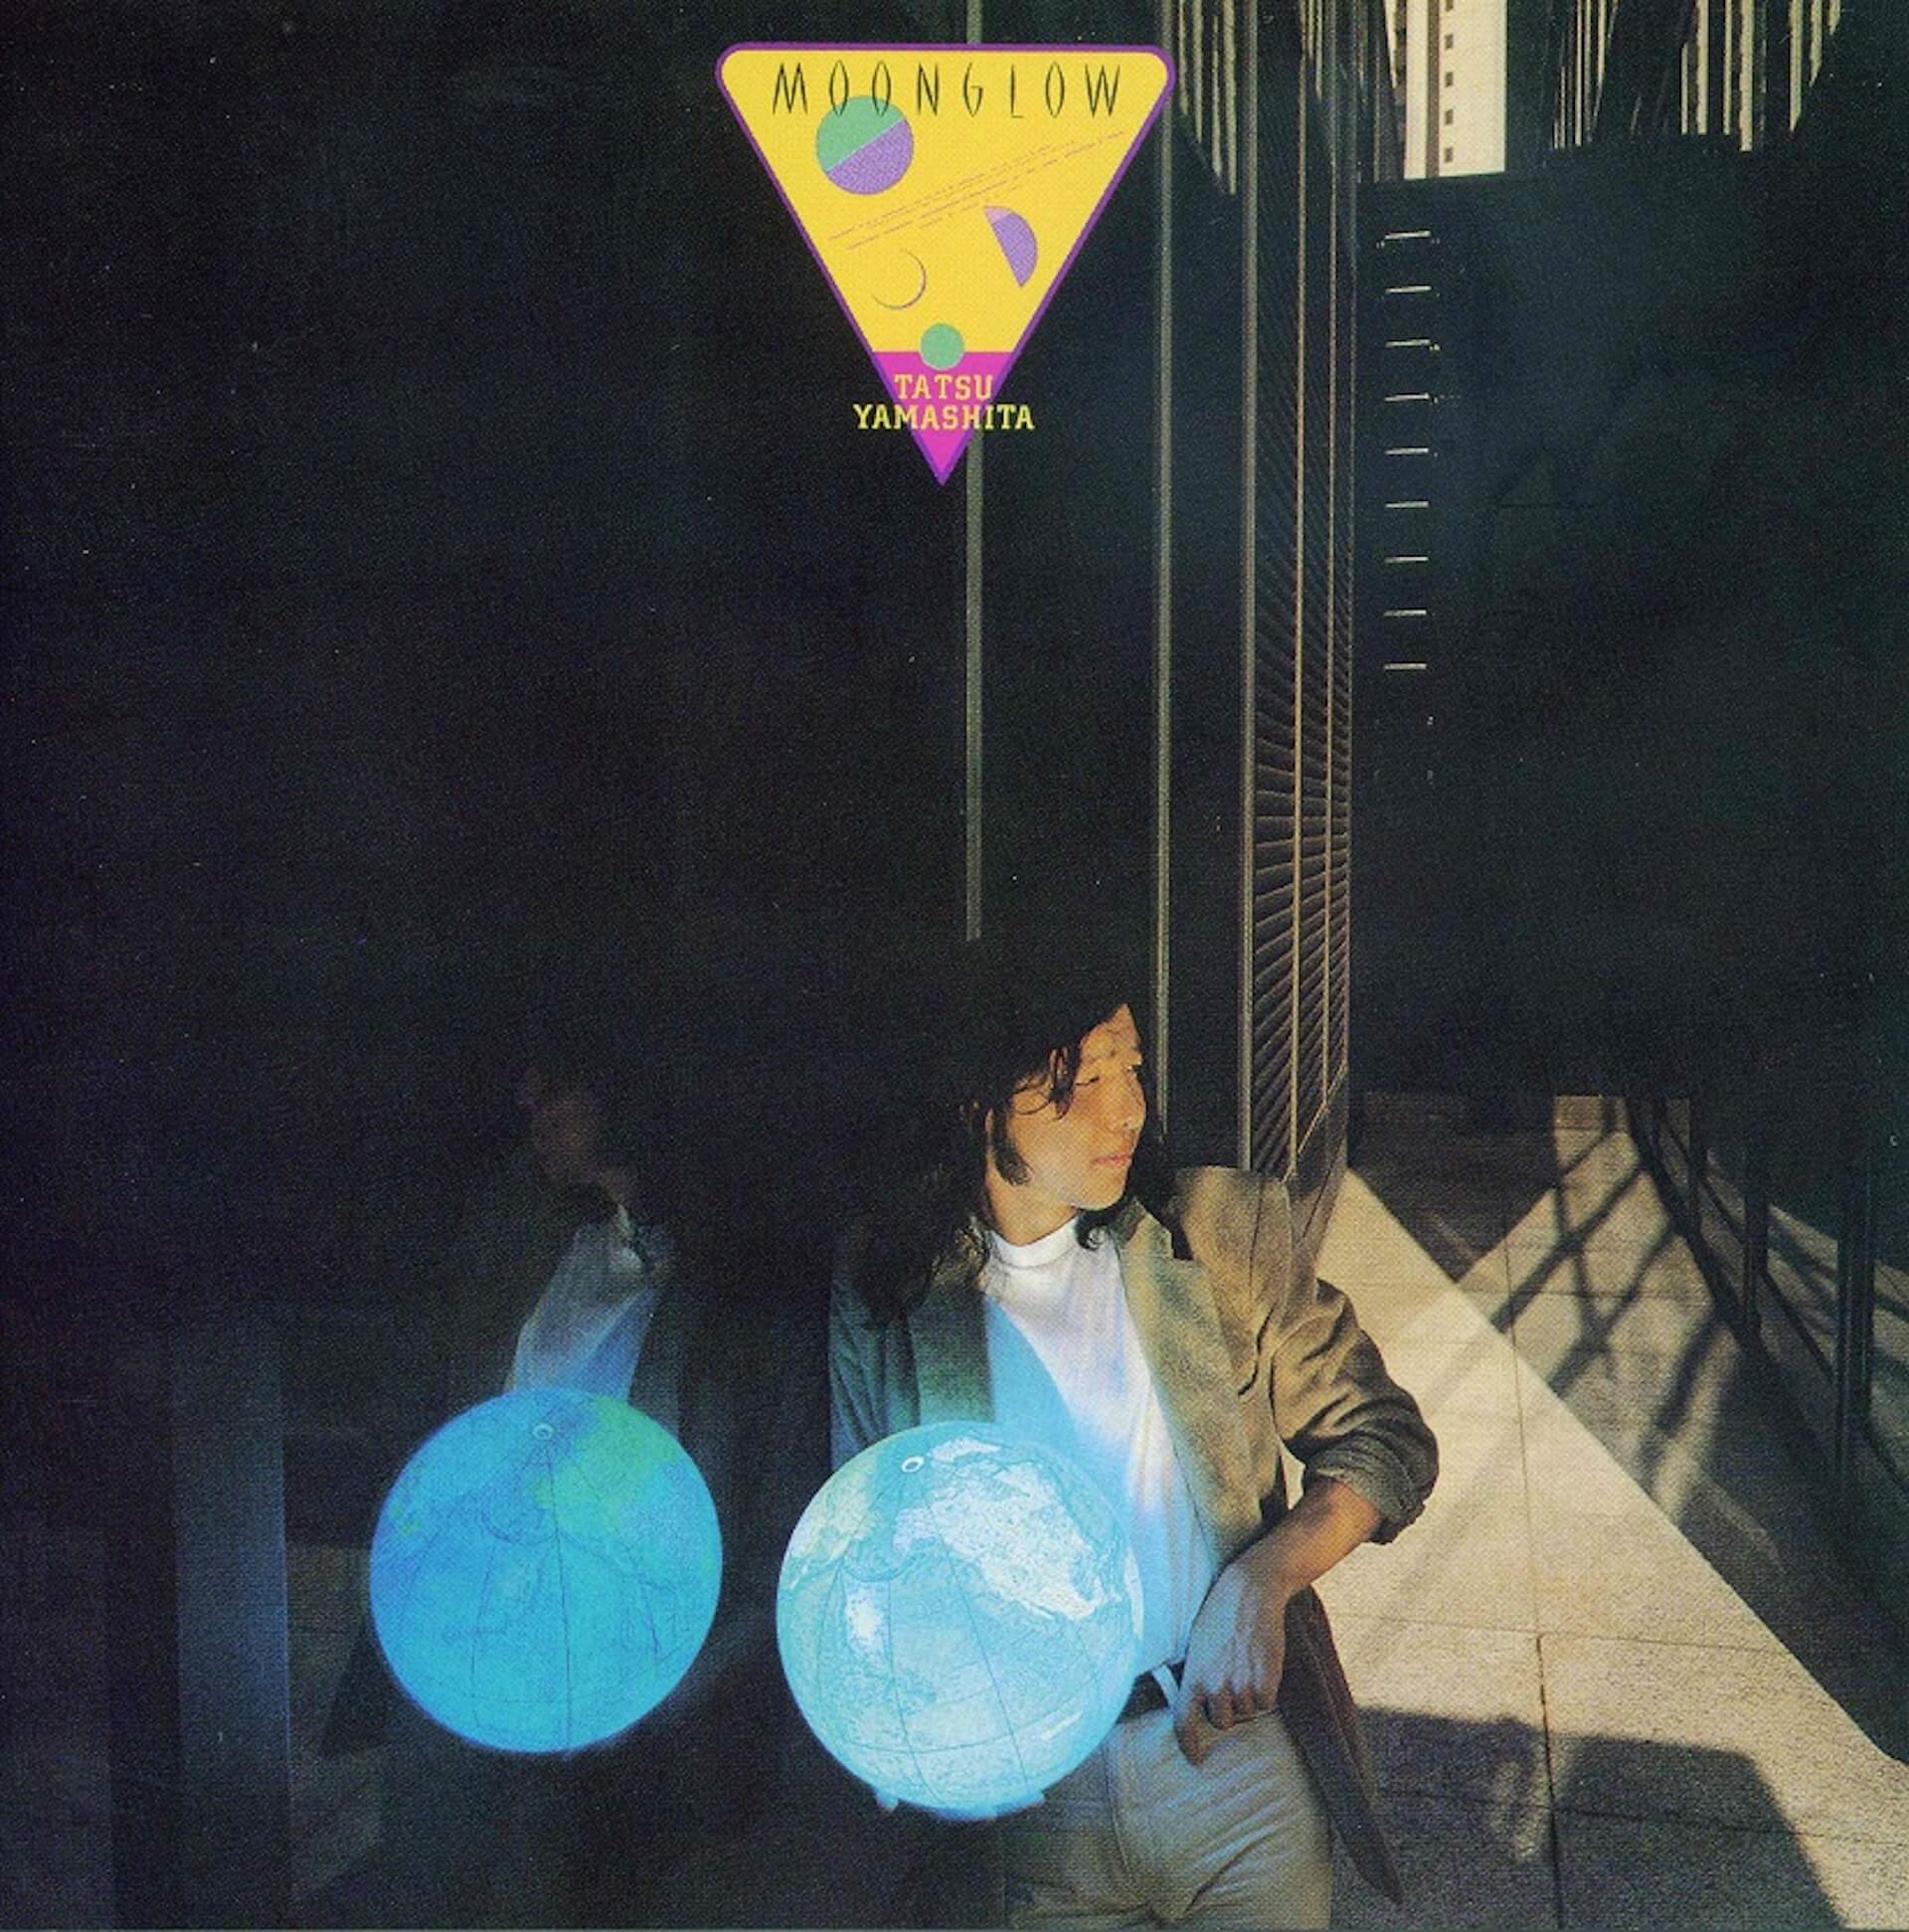 全世界待望”山下達郎、1976年～1982年に発売されたアナログ盤が最新リ